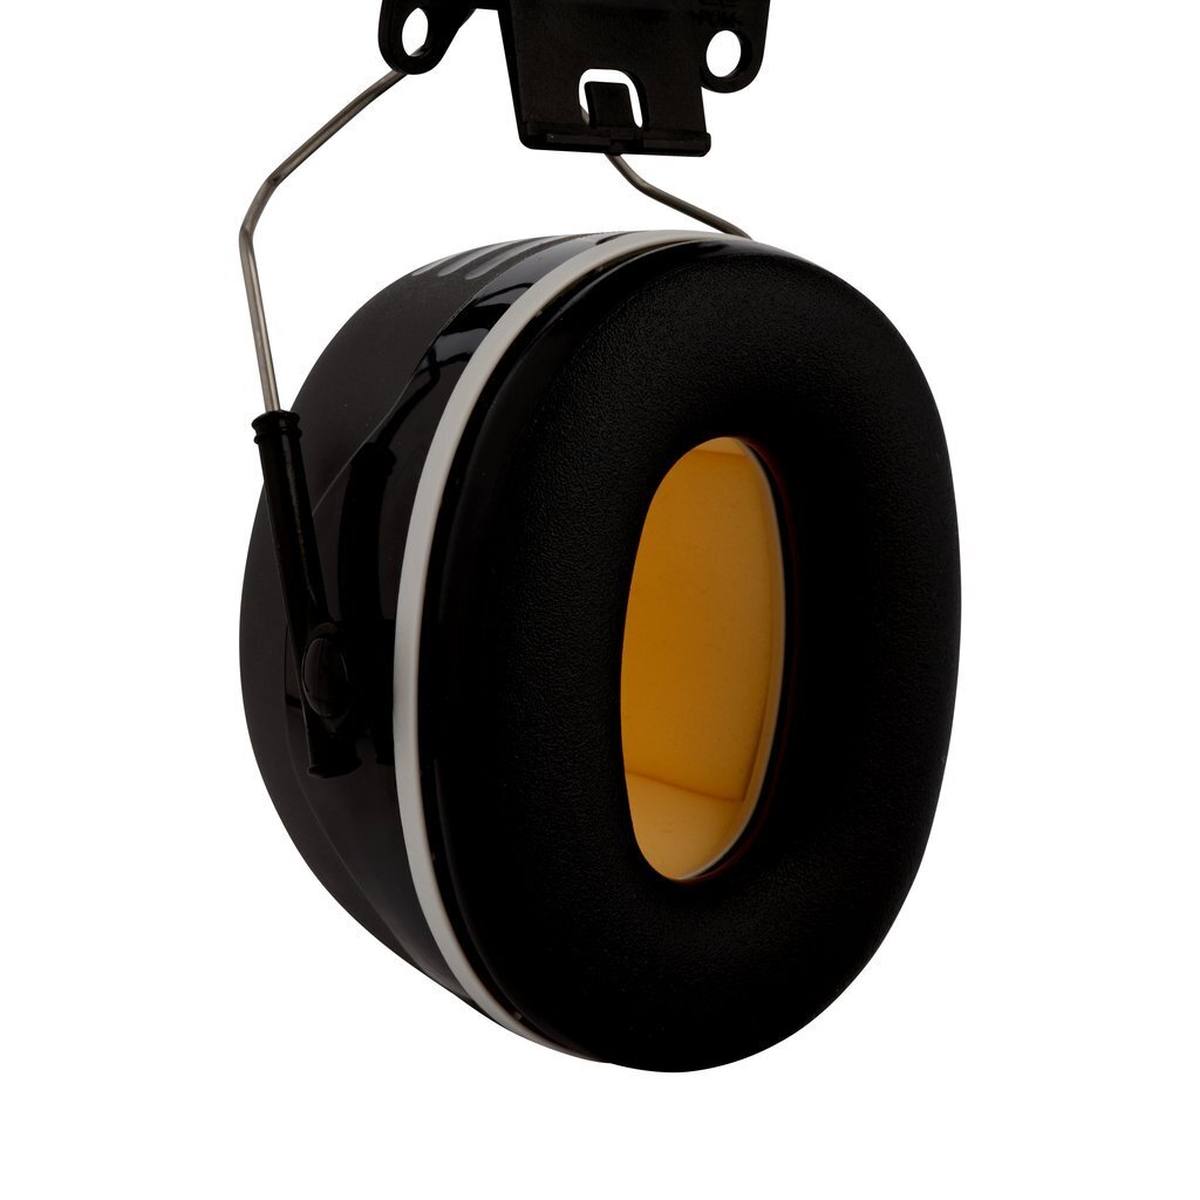 3M Peltor kuulokkeet, X5P3E kypäräkiinnitys, musta, SNR = 36 dB kypäräadapterin P3E kanssa (kaikkiin 3M kypäröihin, paitsi G2000).